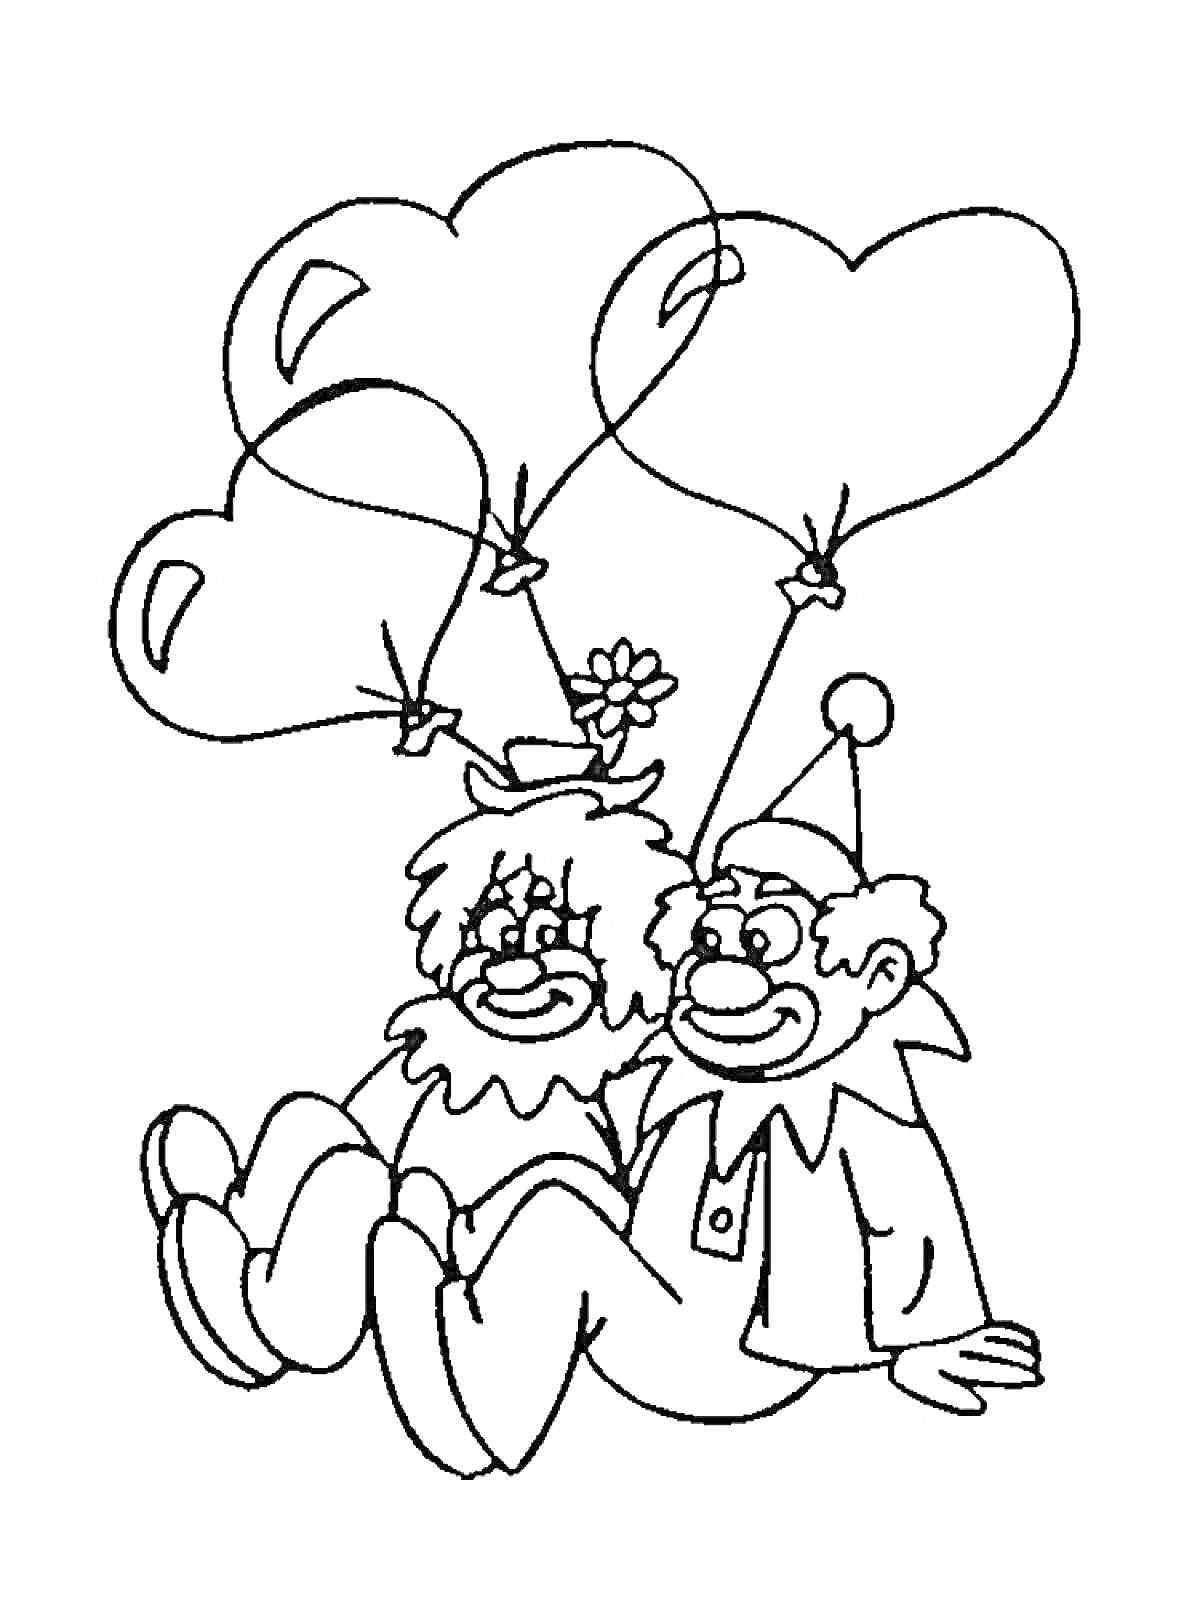 Раскраска Два клоуна с воздушными шарами в форме сердца, сидящие рядом